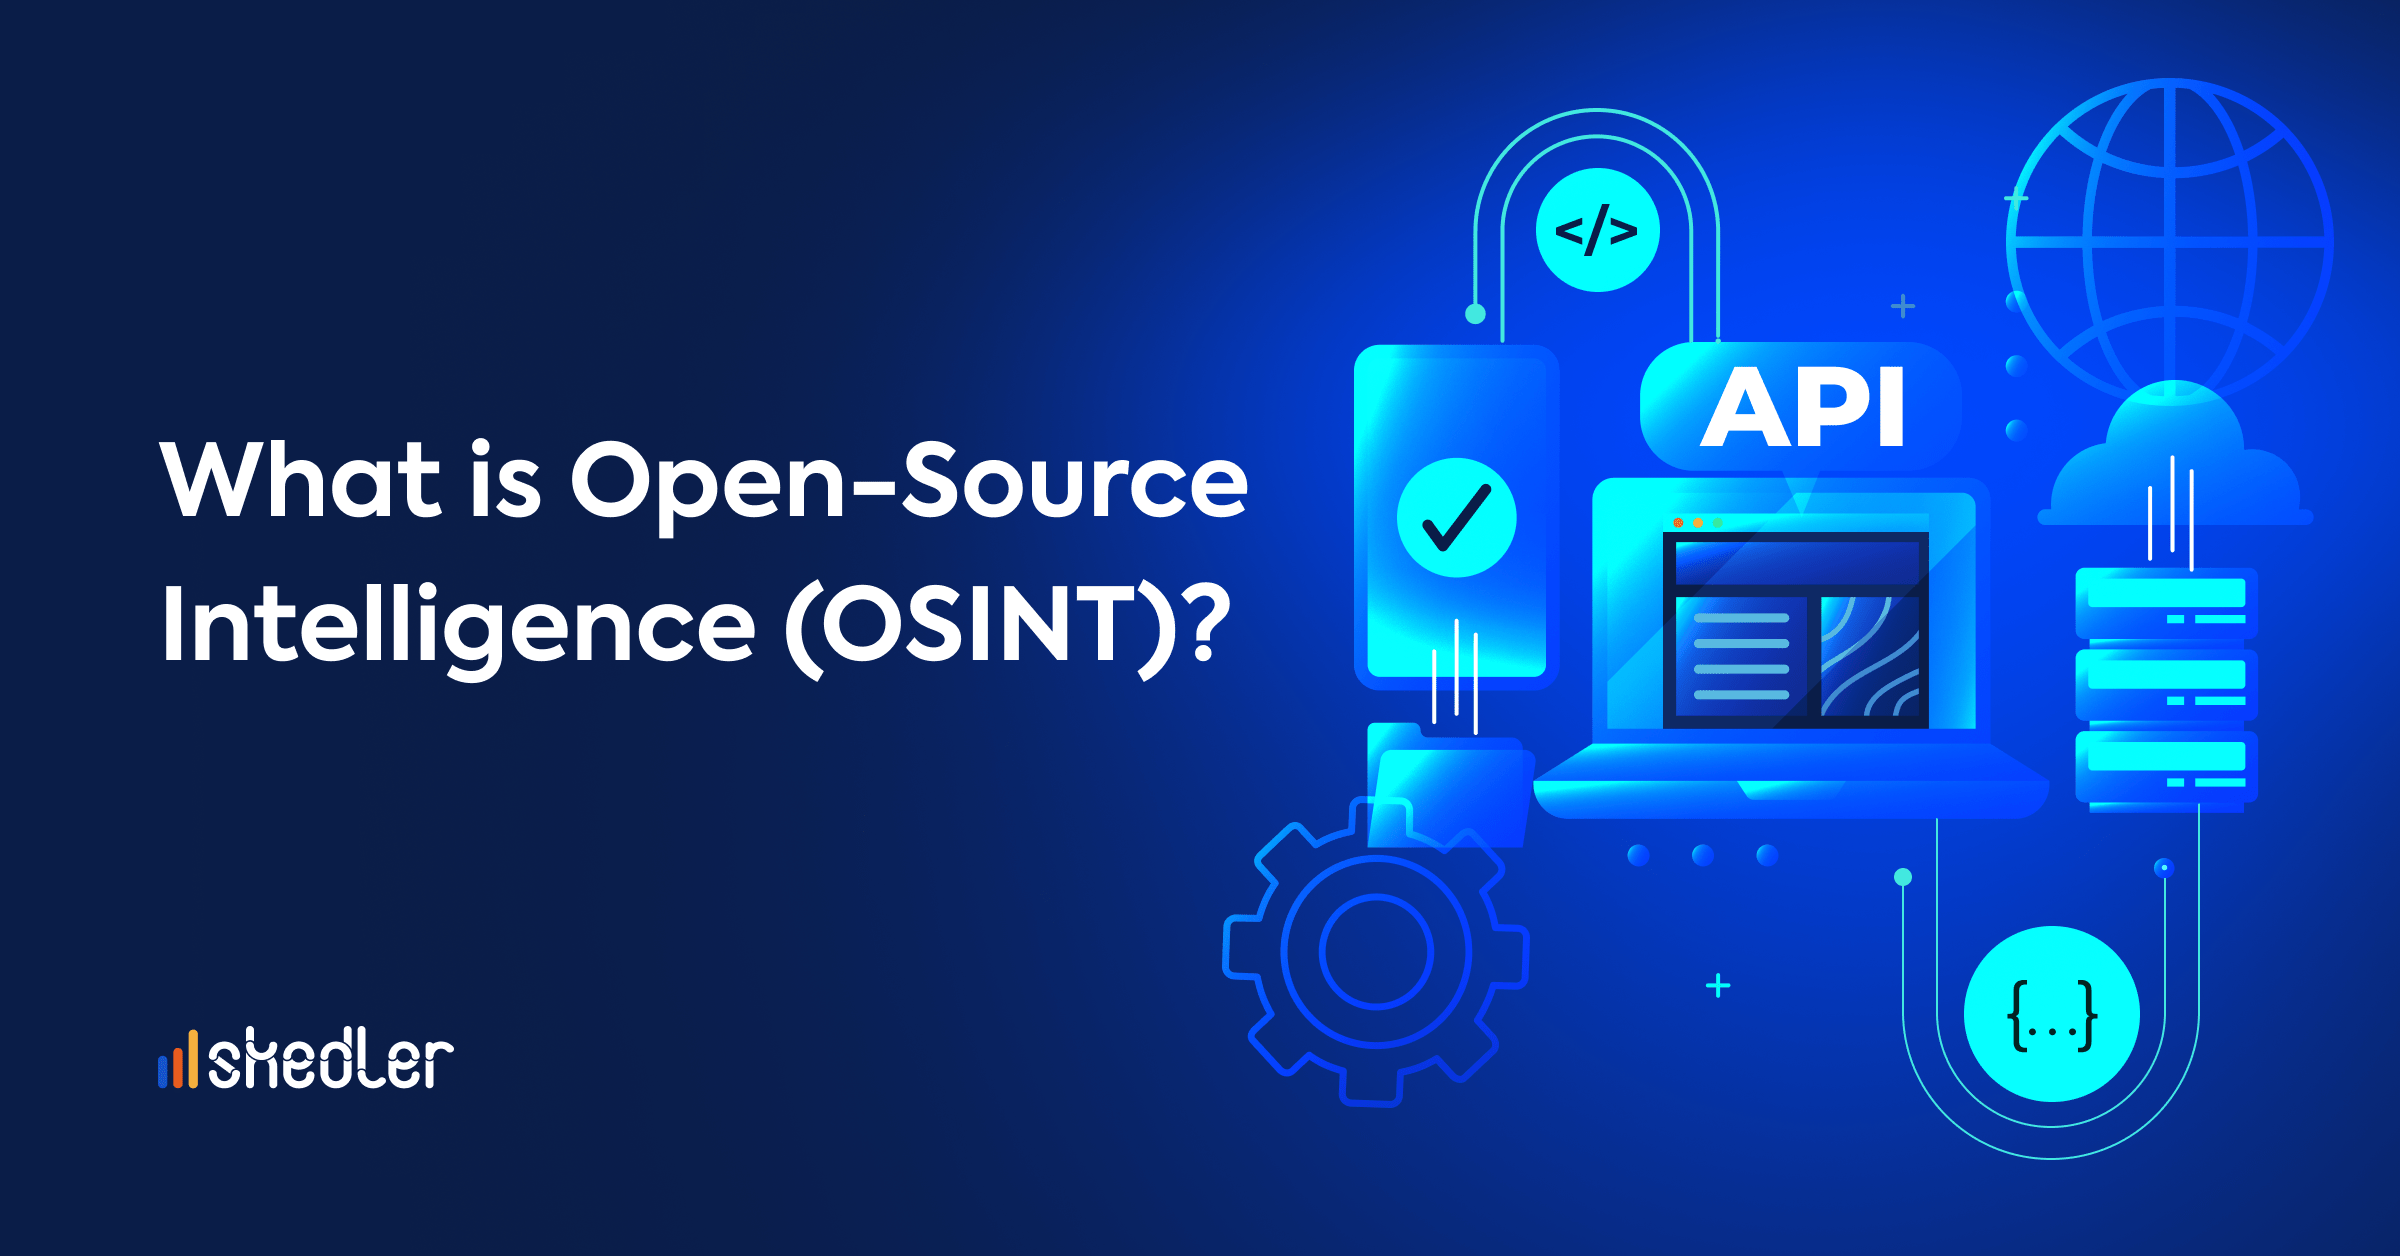 Η συμβολή των τεχνολογιών OSINT (Open Source Intelligence) στη διαχείριση κρίσεων με την χρήση δεδομένων – Μελλοντικές προεκτάσεις και αναδυόμενες ευκαιρίες